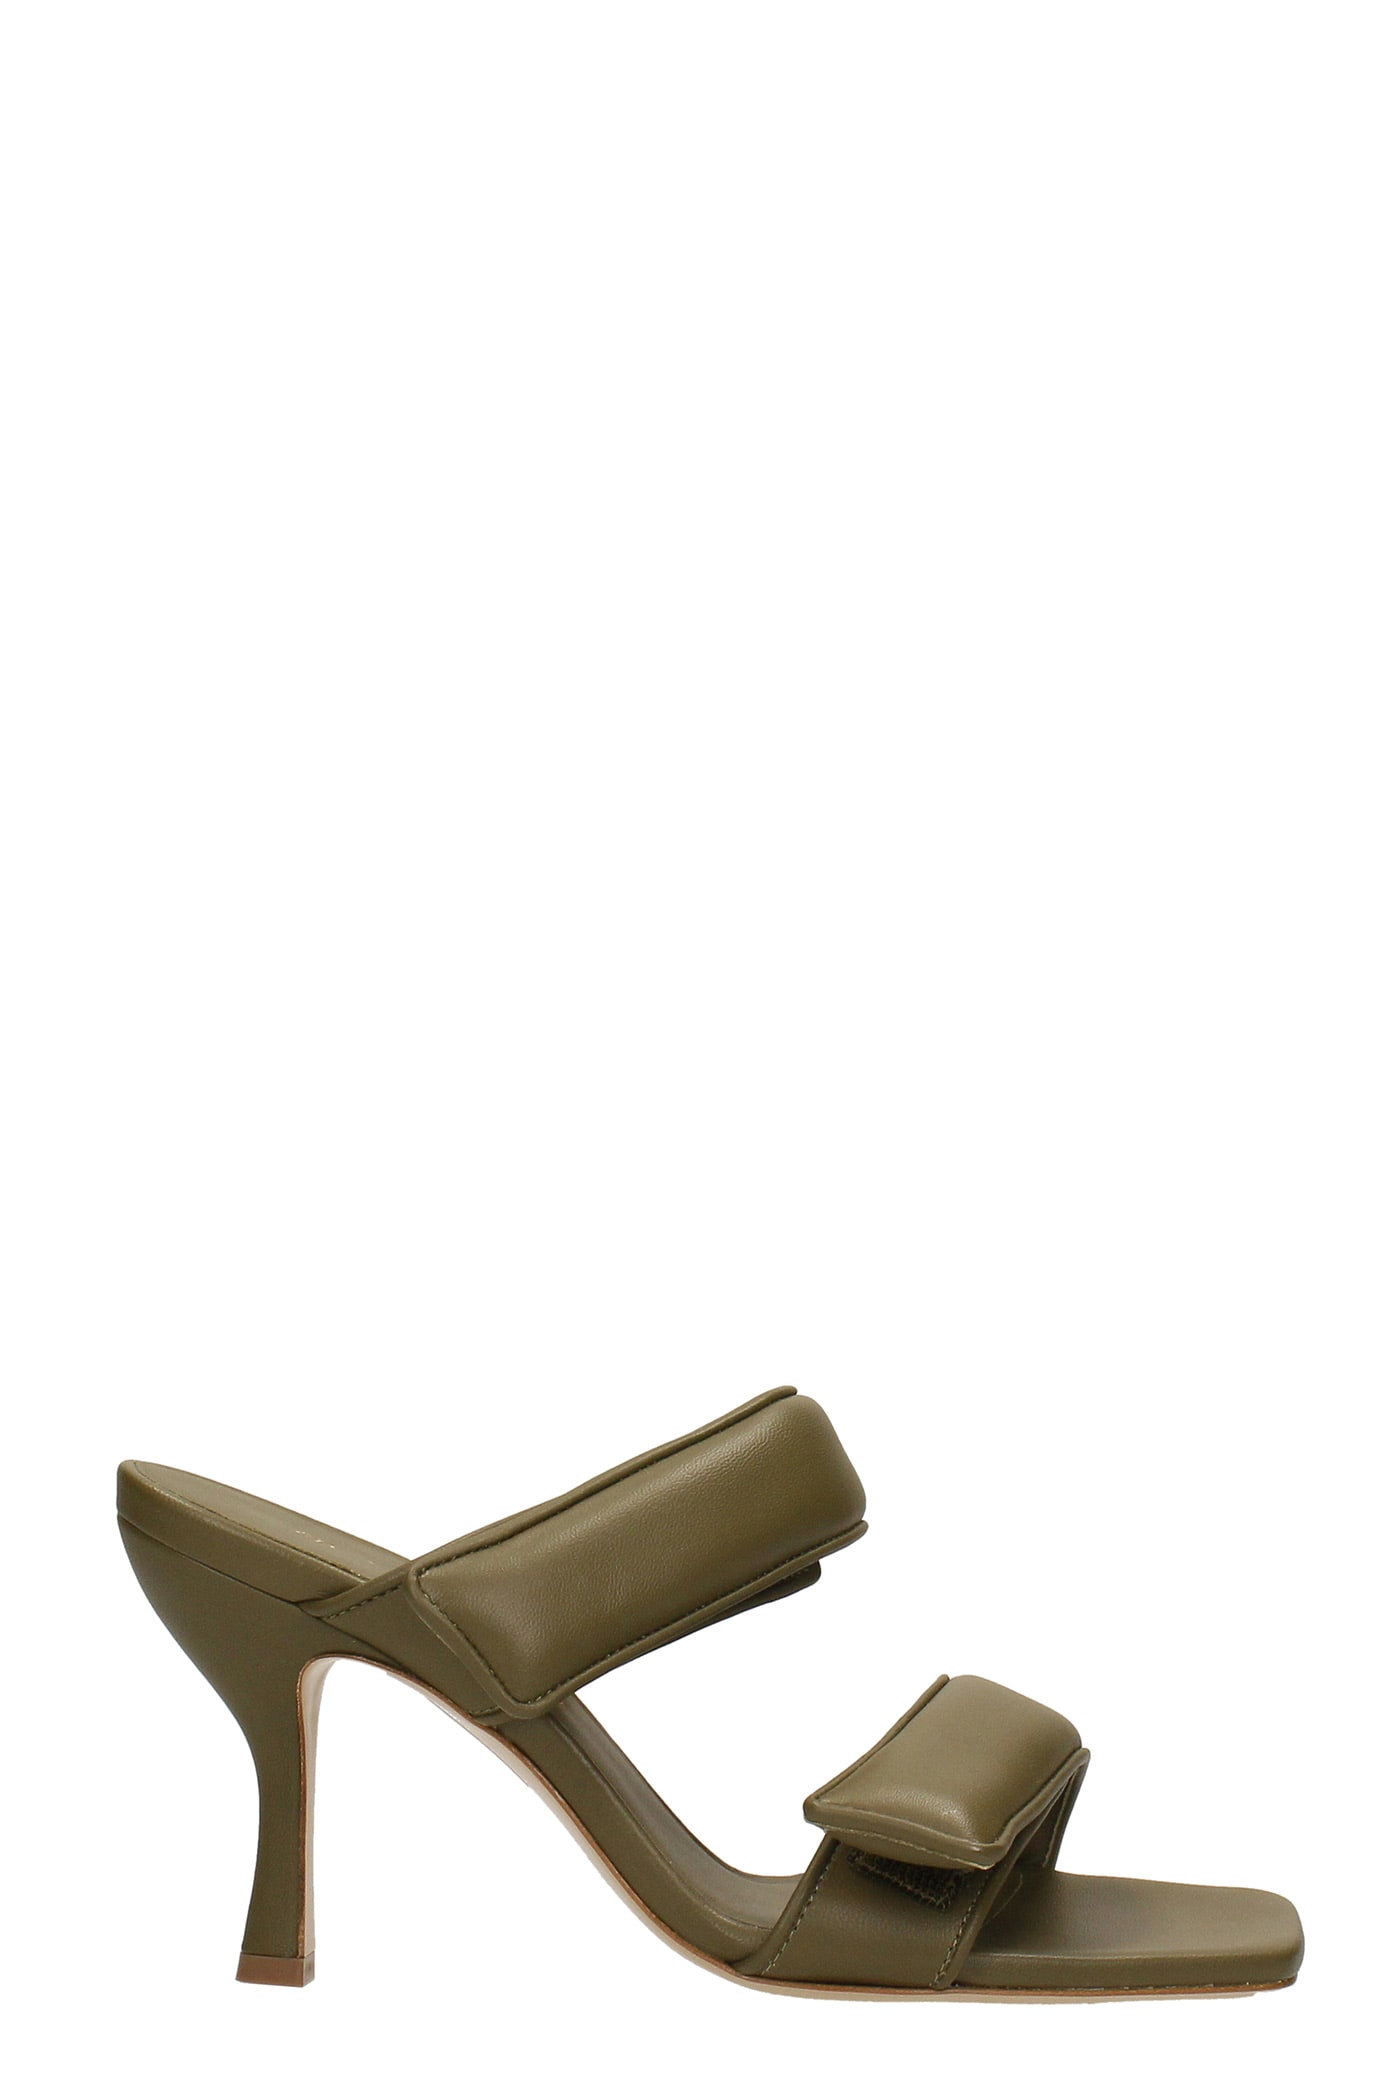 Gia X Pernille Teisbaek Perni 03 Sandals In Green Leather